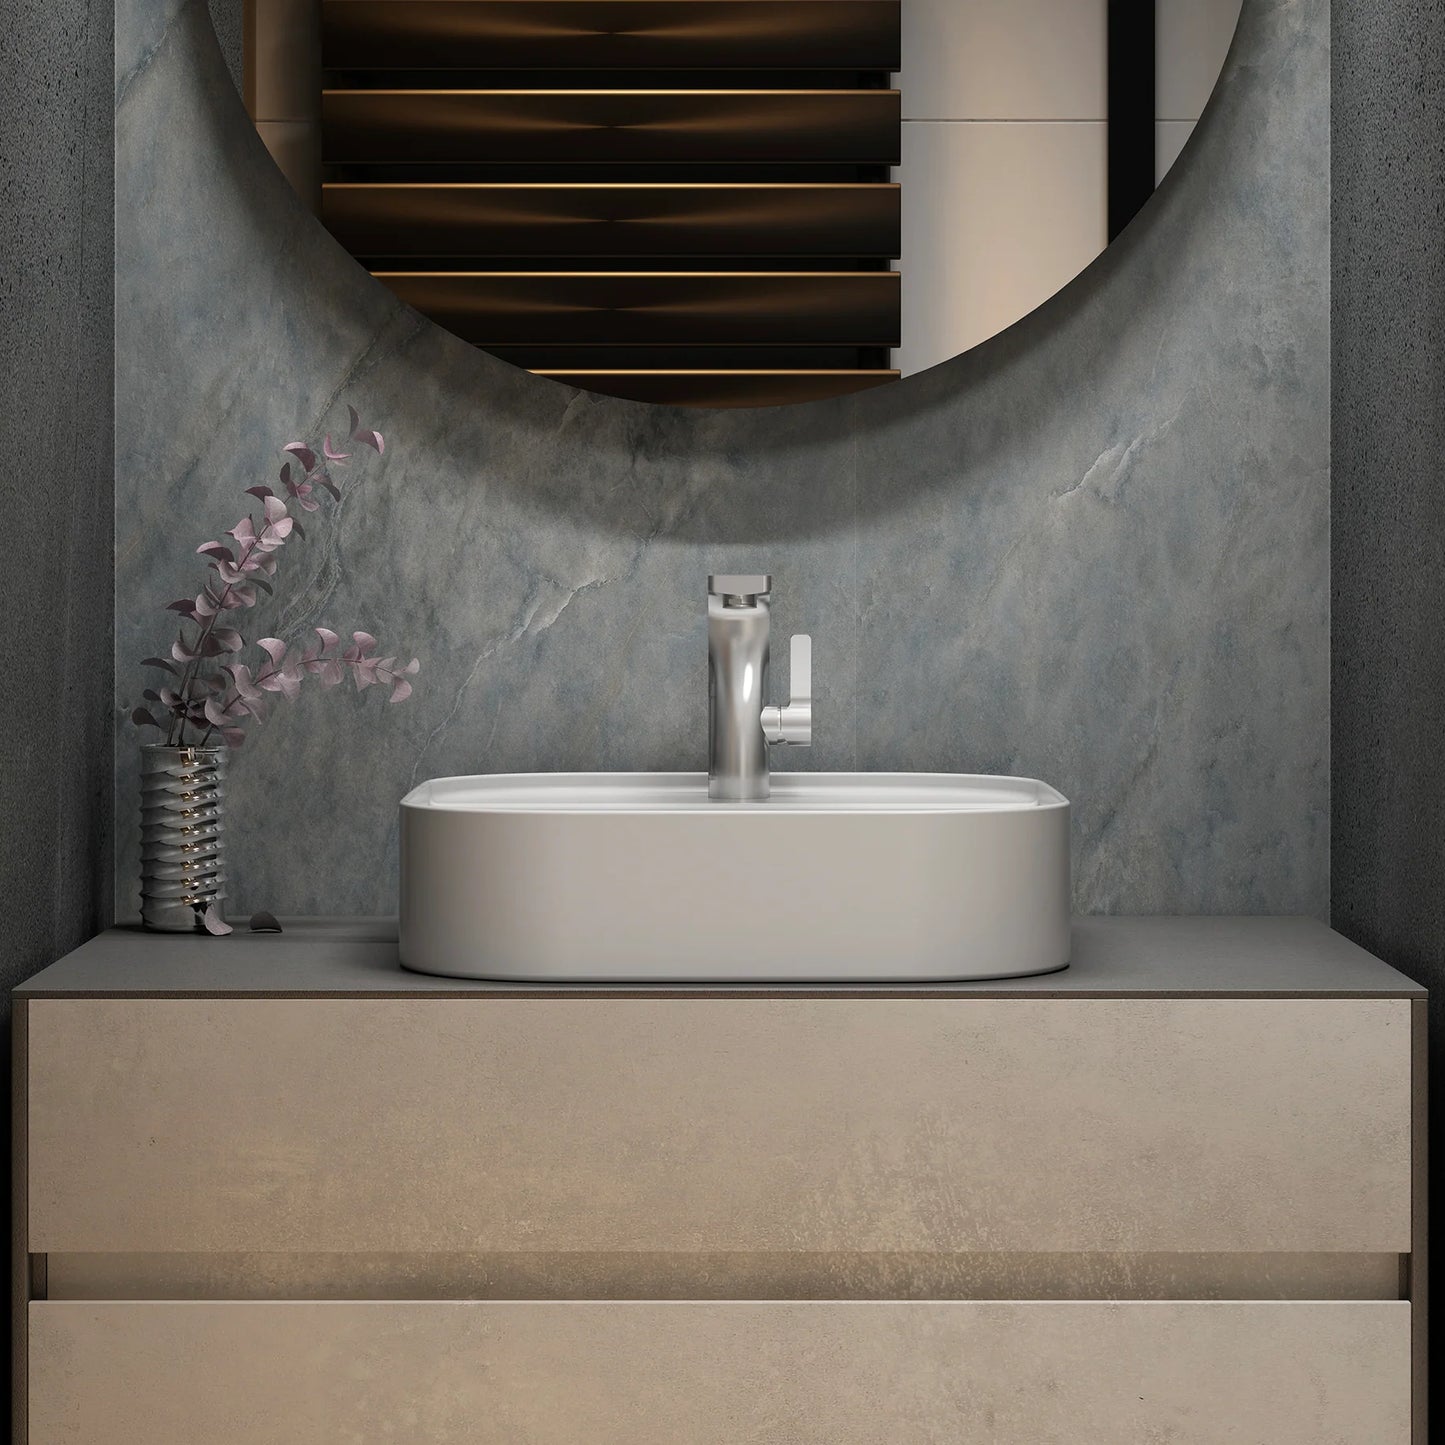 Limestone 48" Wall Mounted Bathroom Vanity with Reinforced Acrylic Sink